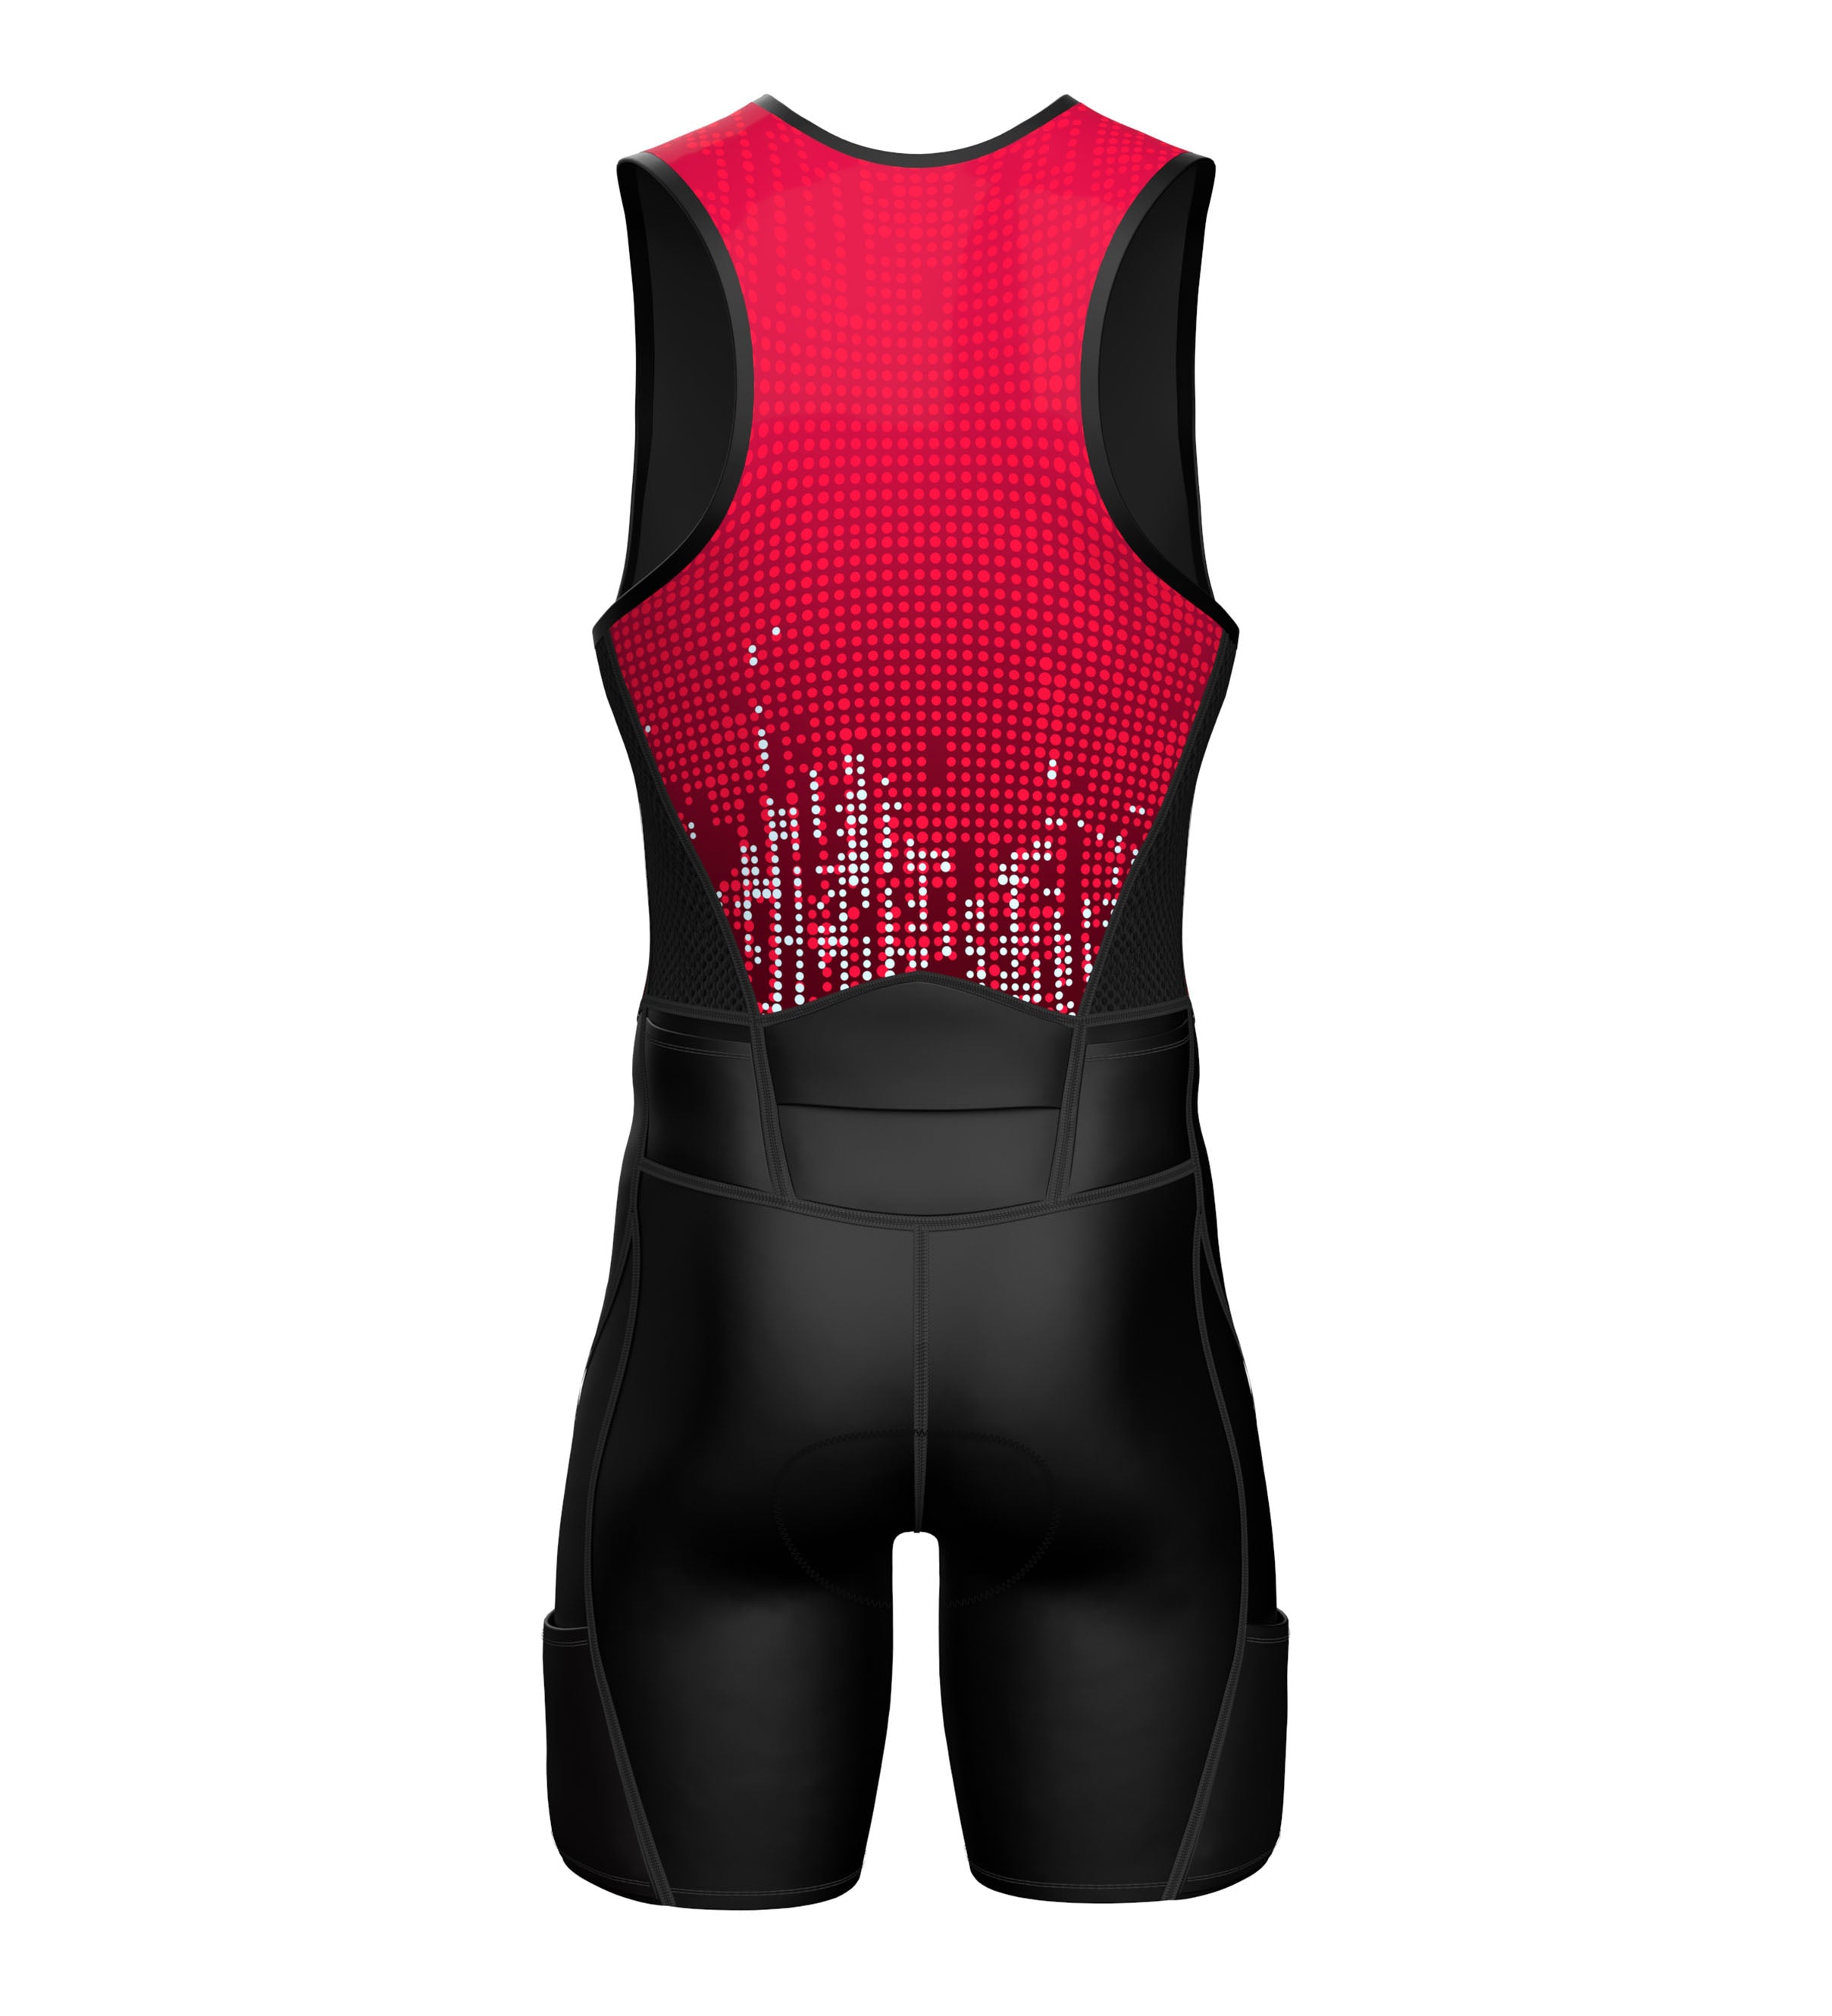 Sparx Men Triathlon Suit|Best Triathlon Suit|Triathlon Suit Men